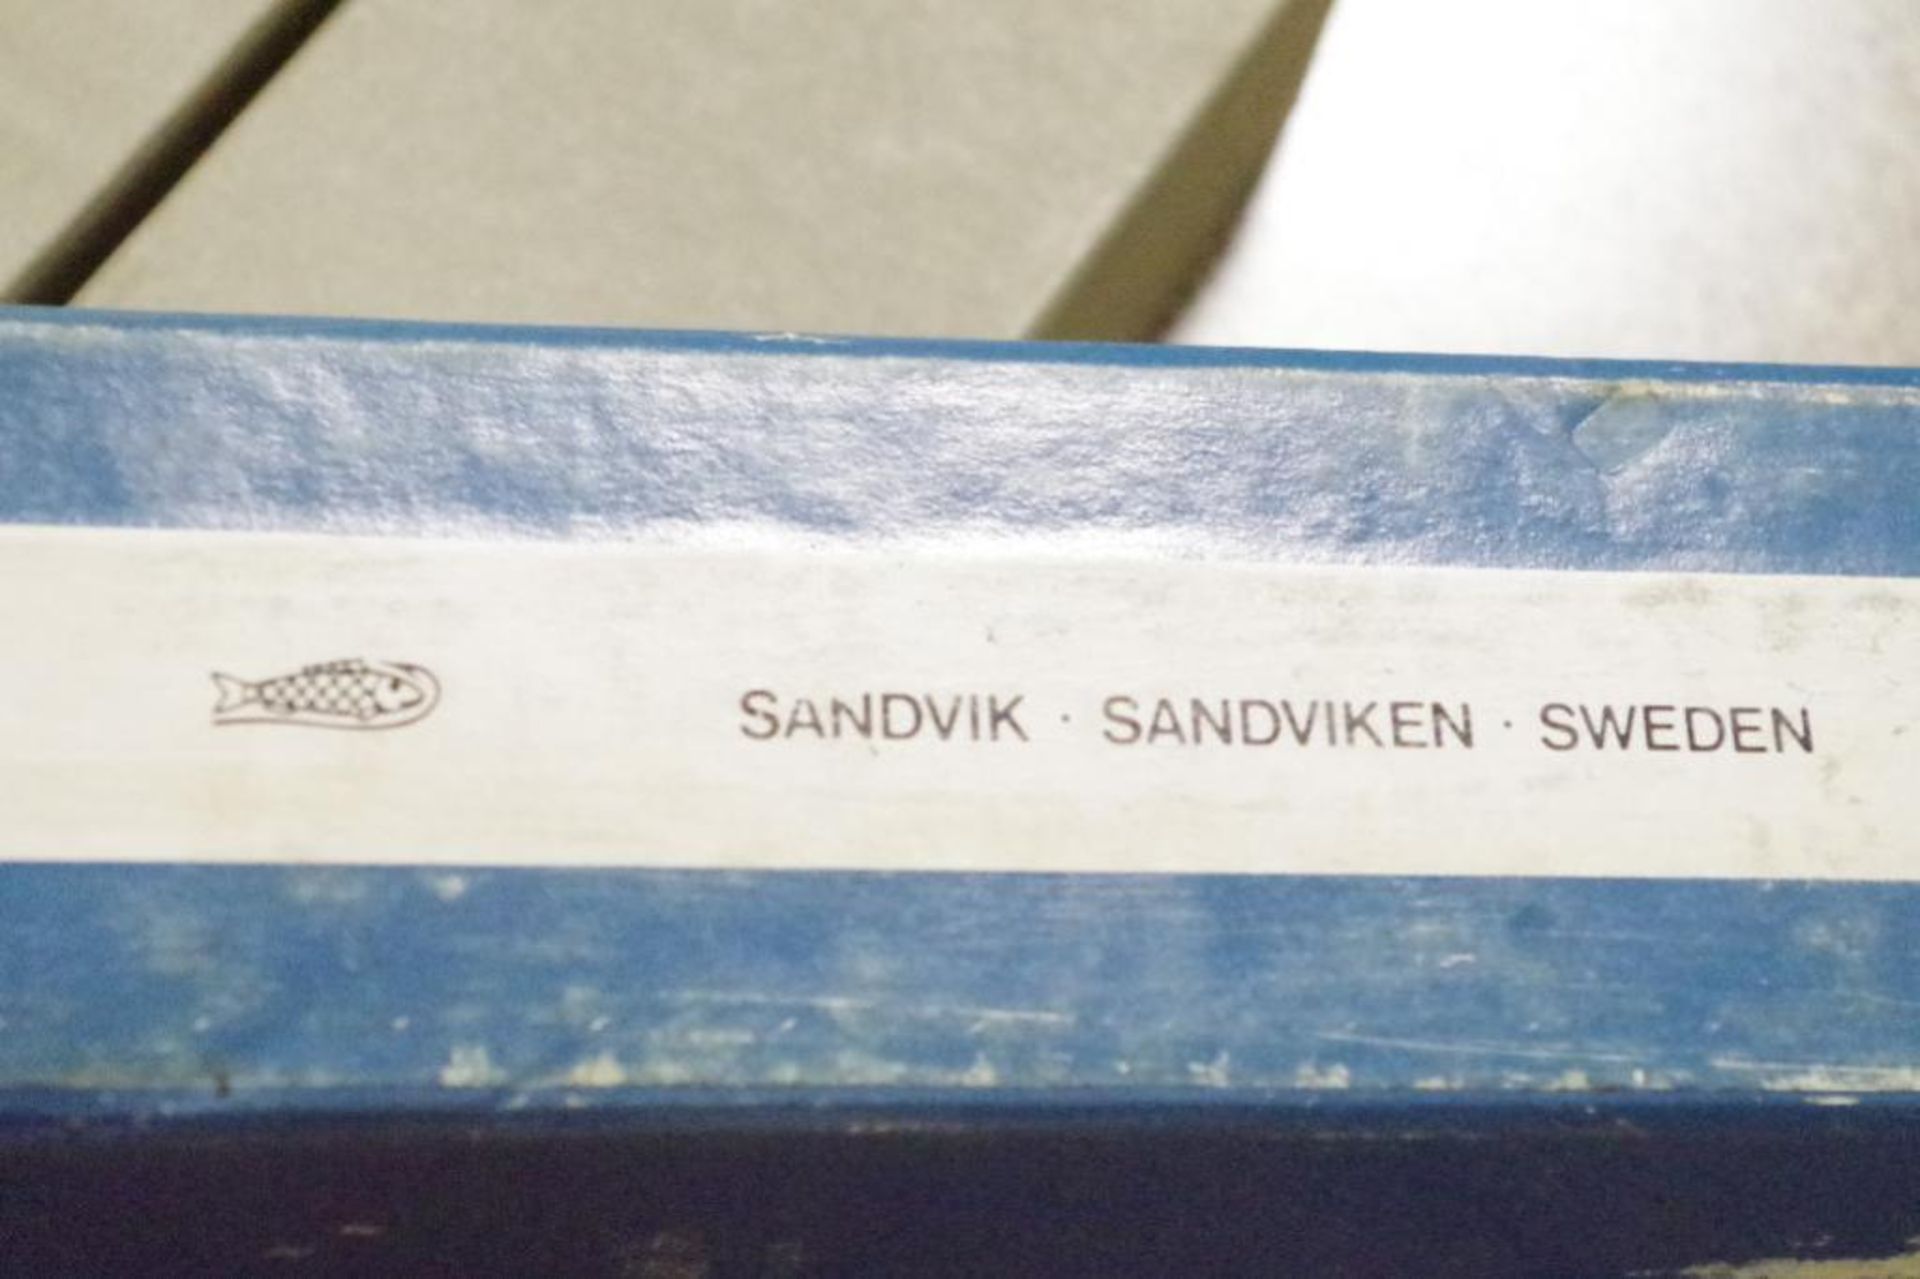 (8) SANDVIK HSS Bi-Metal Power Hack Saw Blades 14" 6 TPI M/N 3809 Made in Sweden - Image 3 of 3